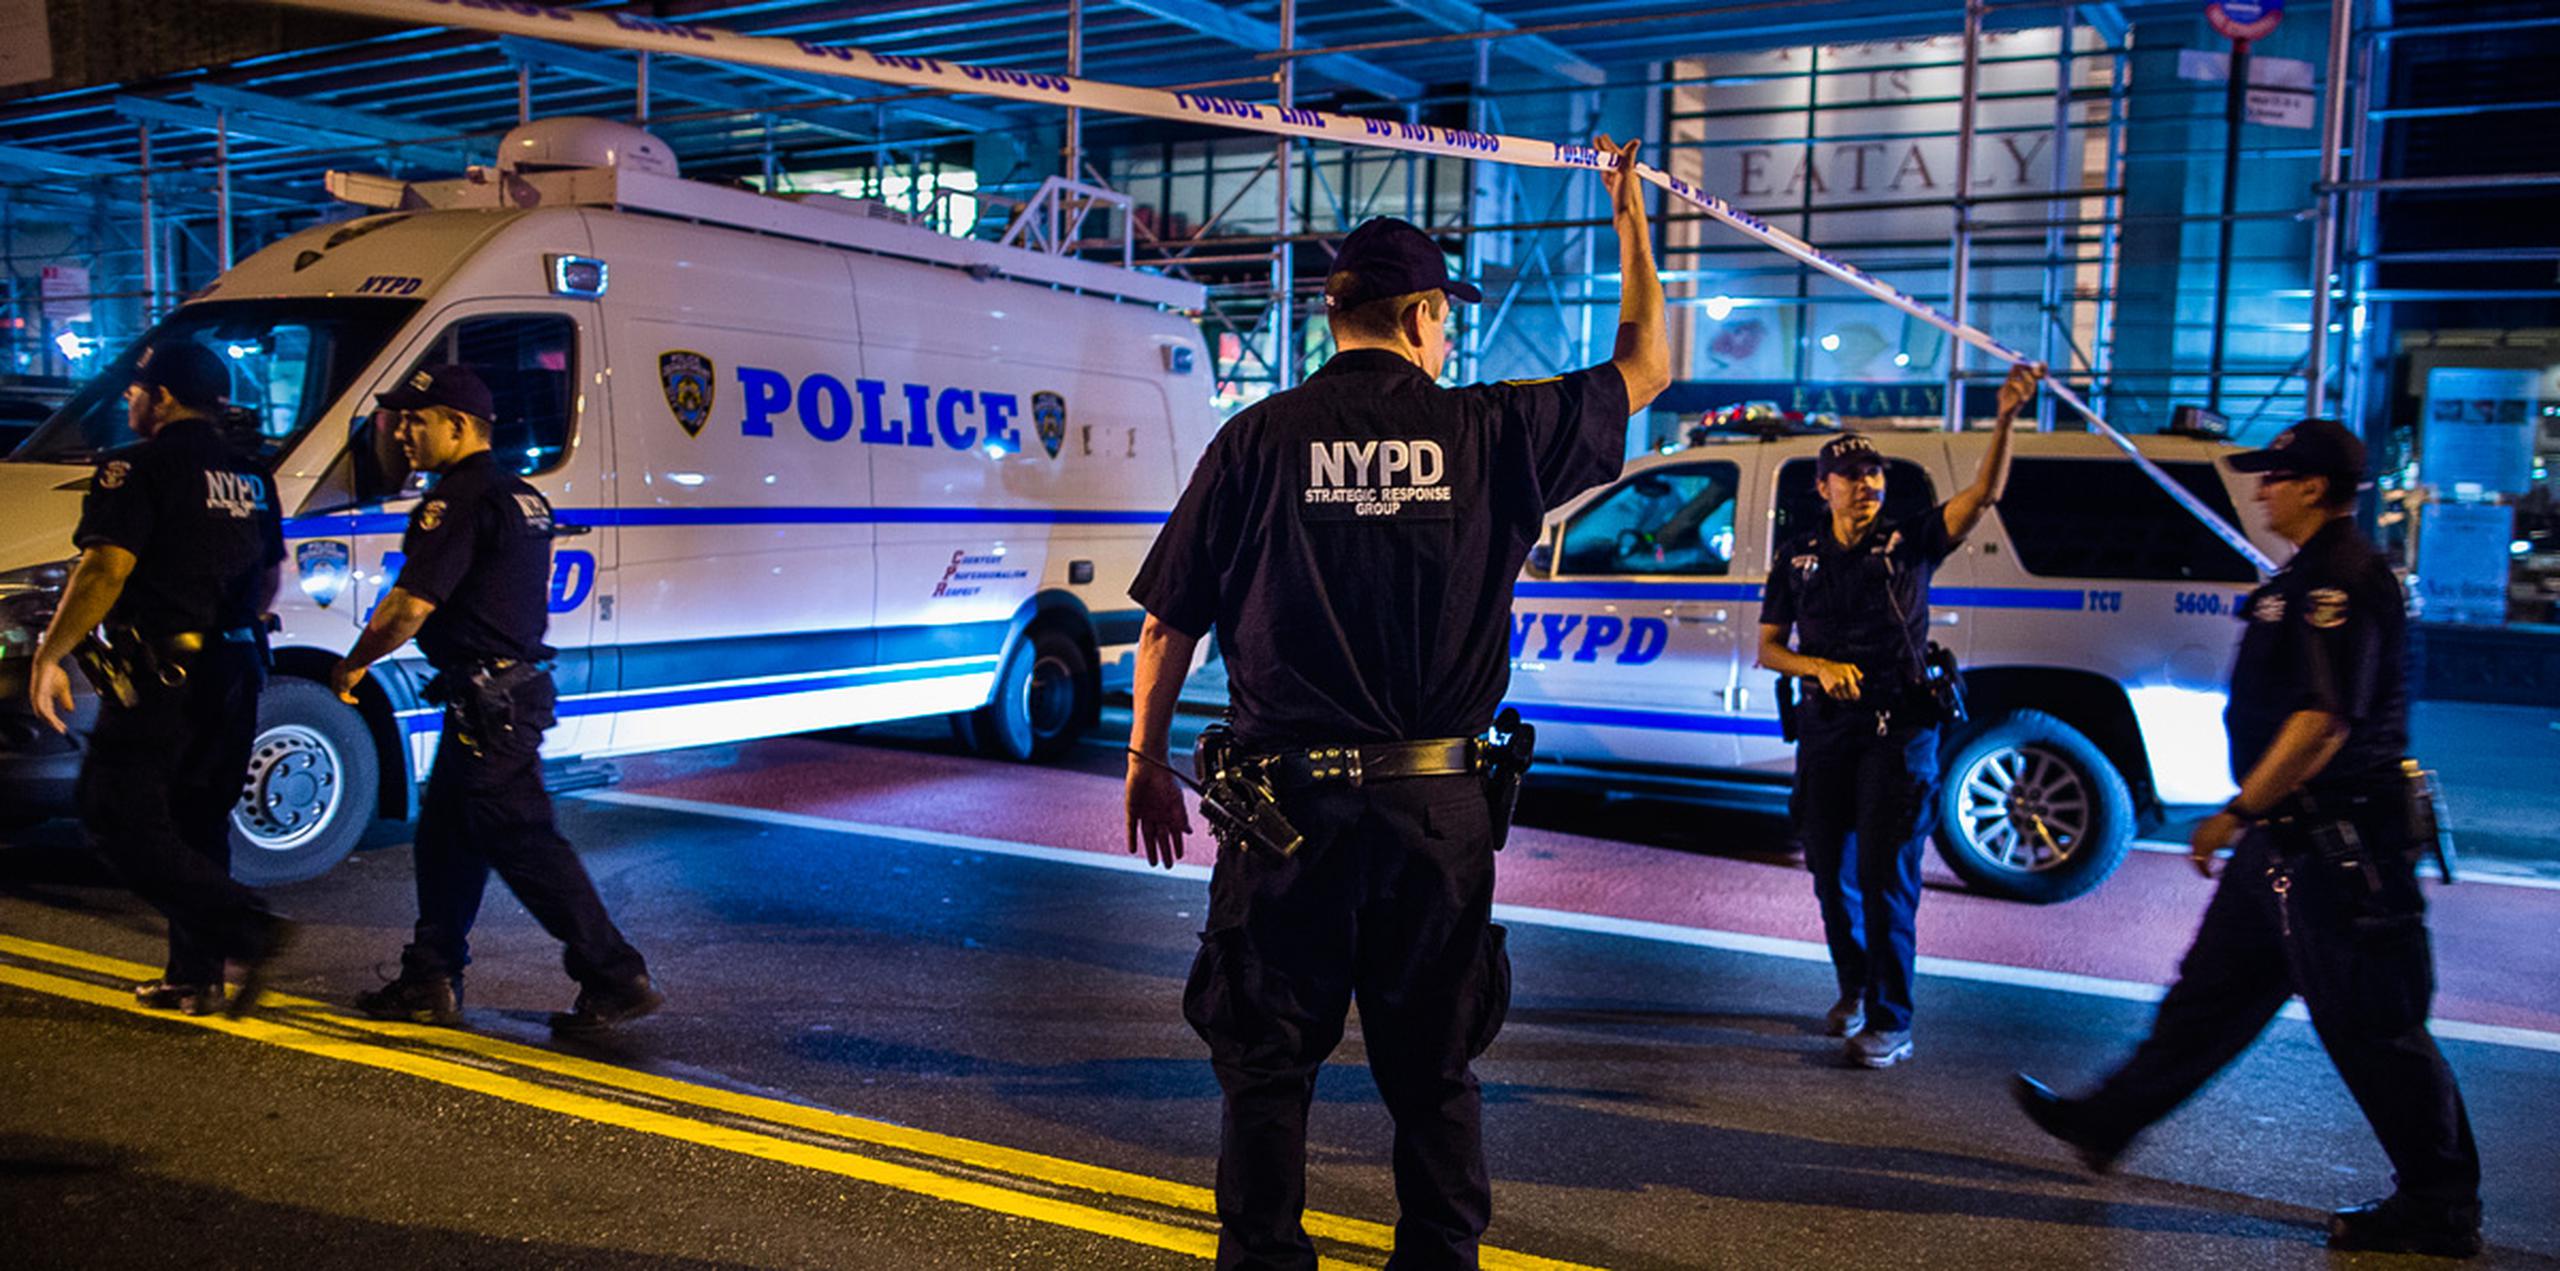 Las autoridades de Nueva York han demostrado gran cautela primero para confirmar si se trataba de actos terroristas y también para asegurar si, a partir de las investigaciones, existen conexiones extranjeras en las bombas colocadas en las últimas horas. (AP)